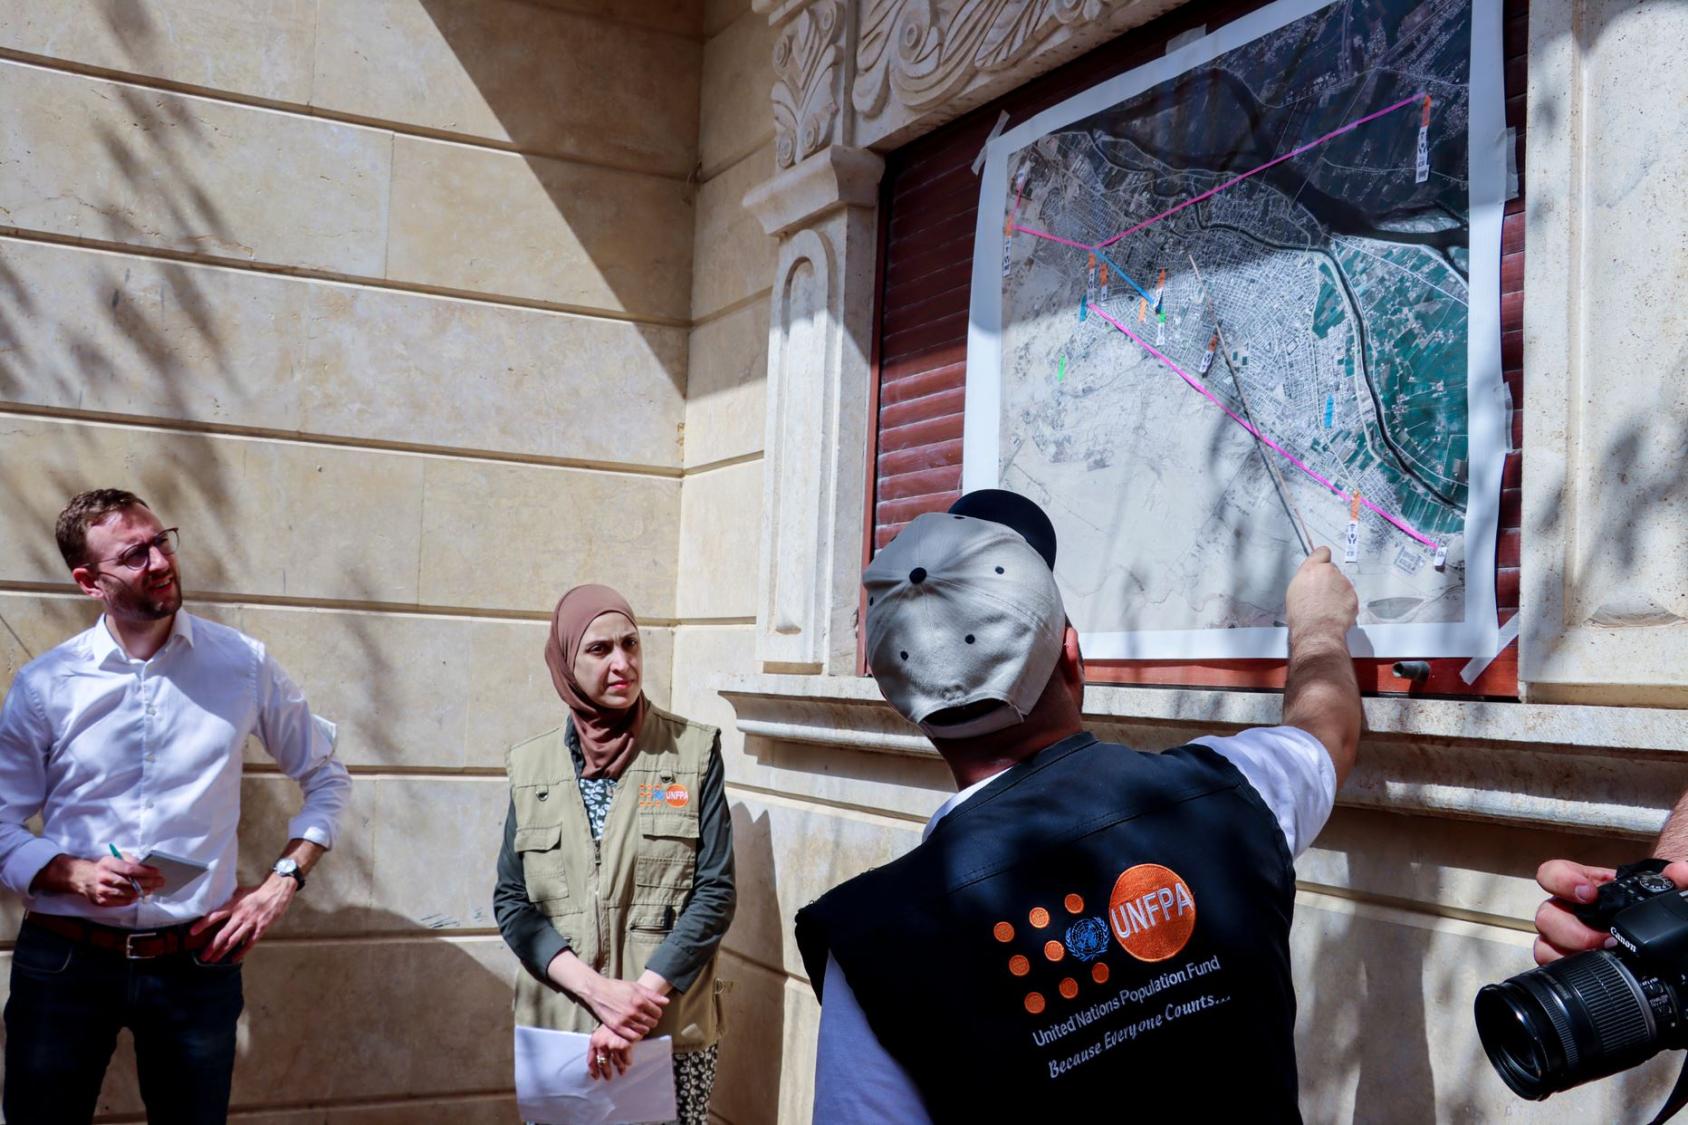 联合国人口基金工作人员在访问代尔祖尔市期间向一群捐助者作简报。